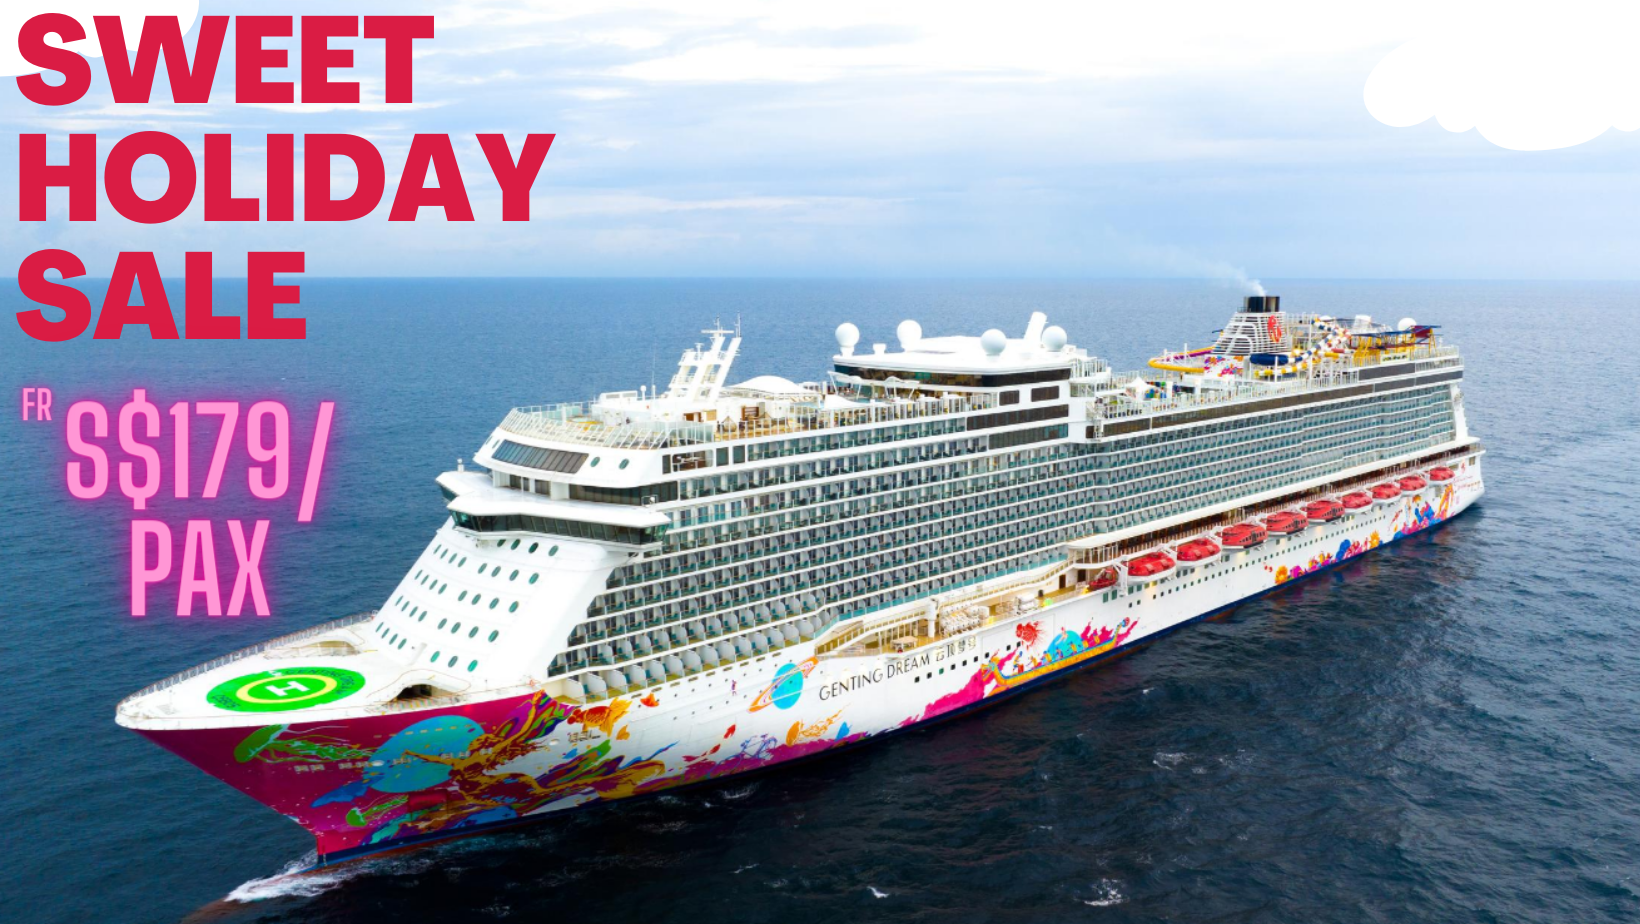 Resort World Cruises | Genting Dream Cruise